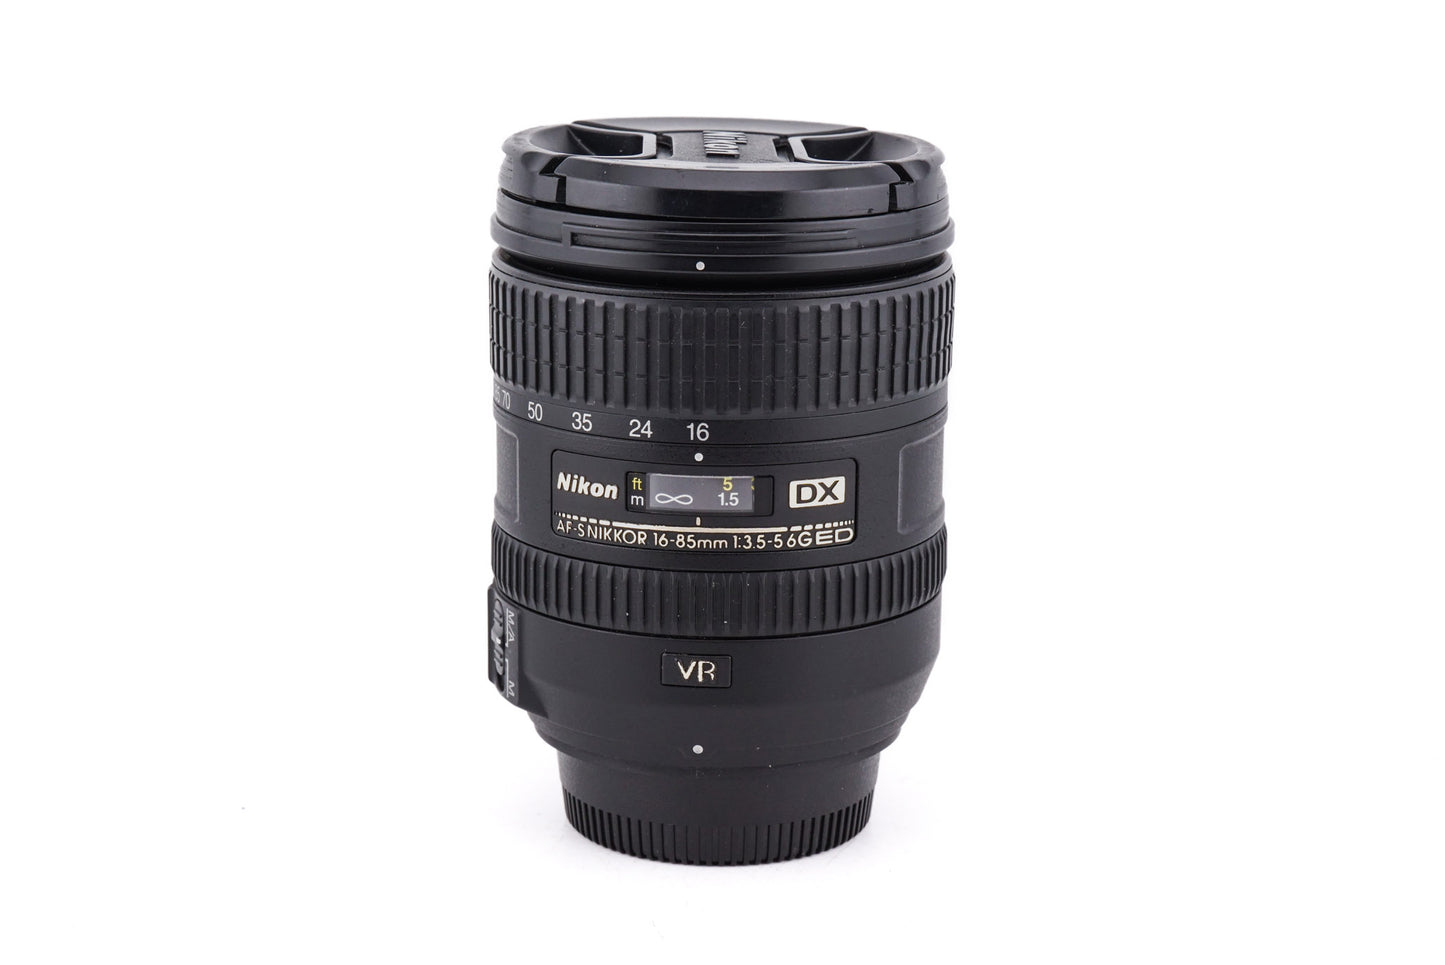 Nikon 16-85mm f3.5-5.6 AF-S Nikkor G ED VR - Lens